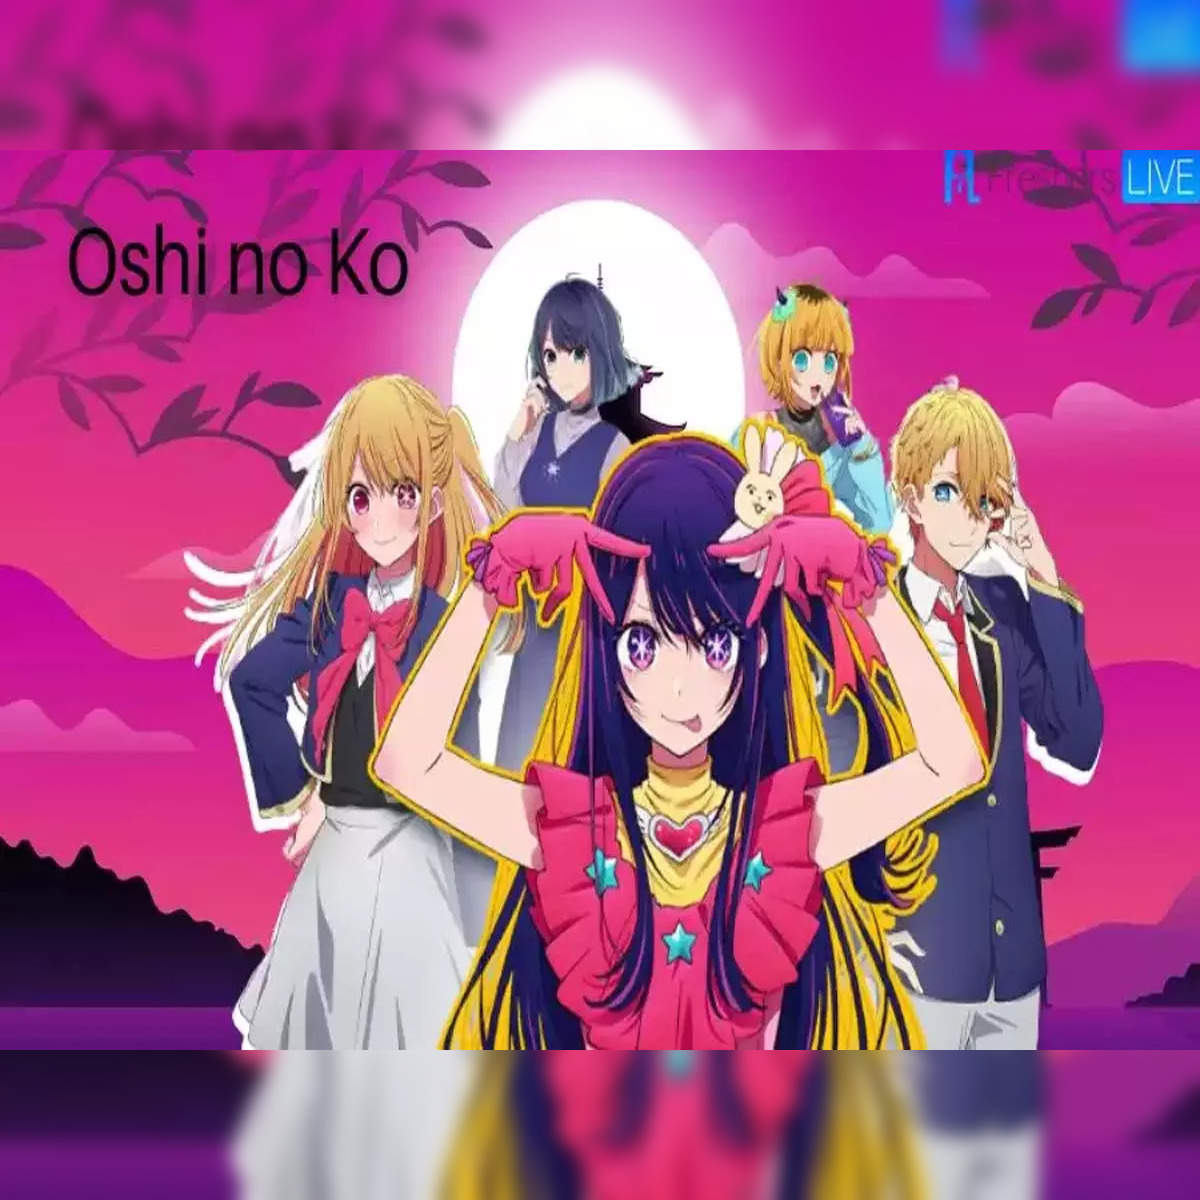 Finally Ai is here! Anime: Oshi no Ko Character: Ai Hoshino